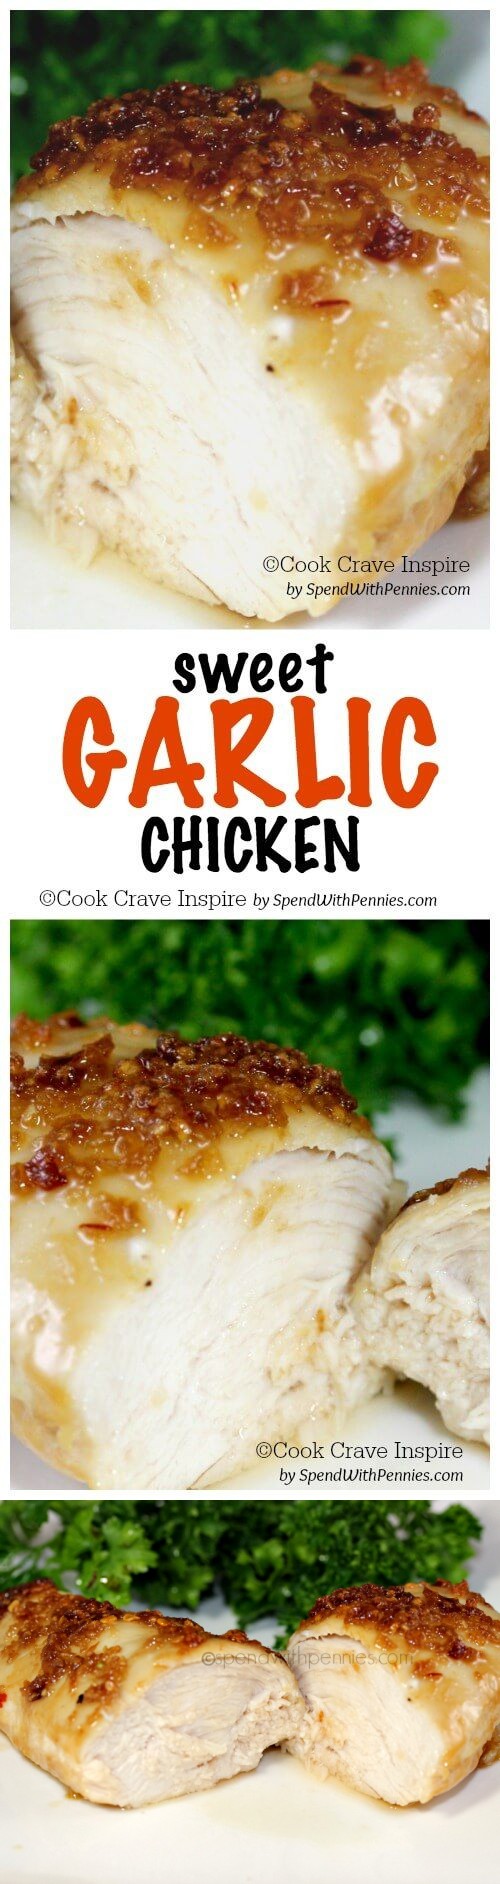 Garlic Chicken